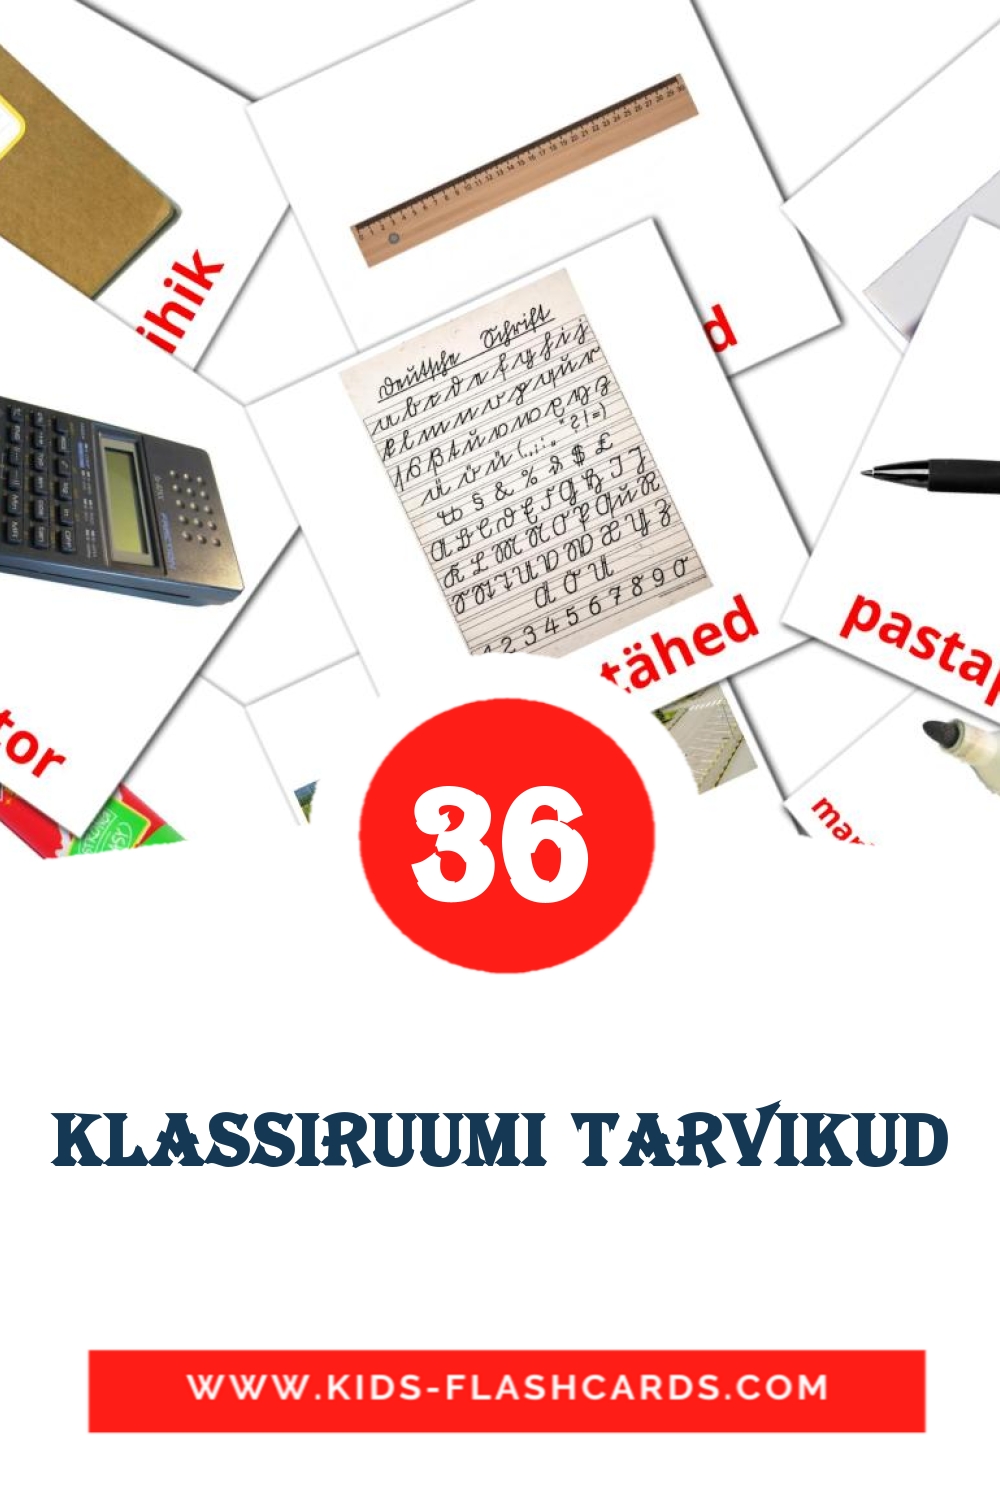 36 tarjetas didacticas de Klassiruumi tarvikud para el jardín de infancia en estonio